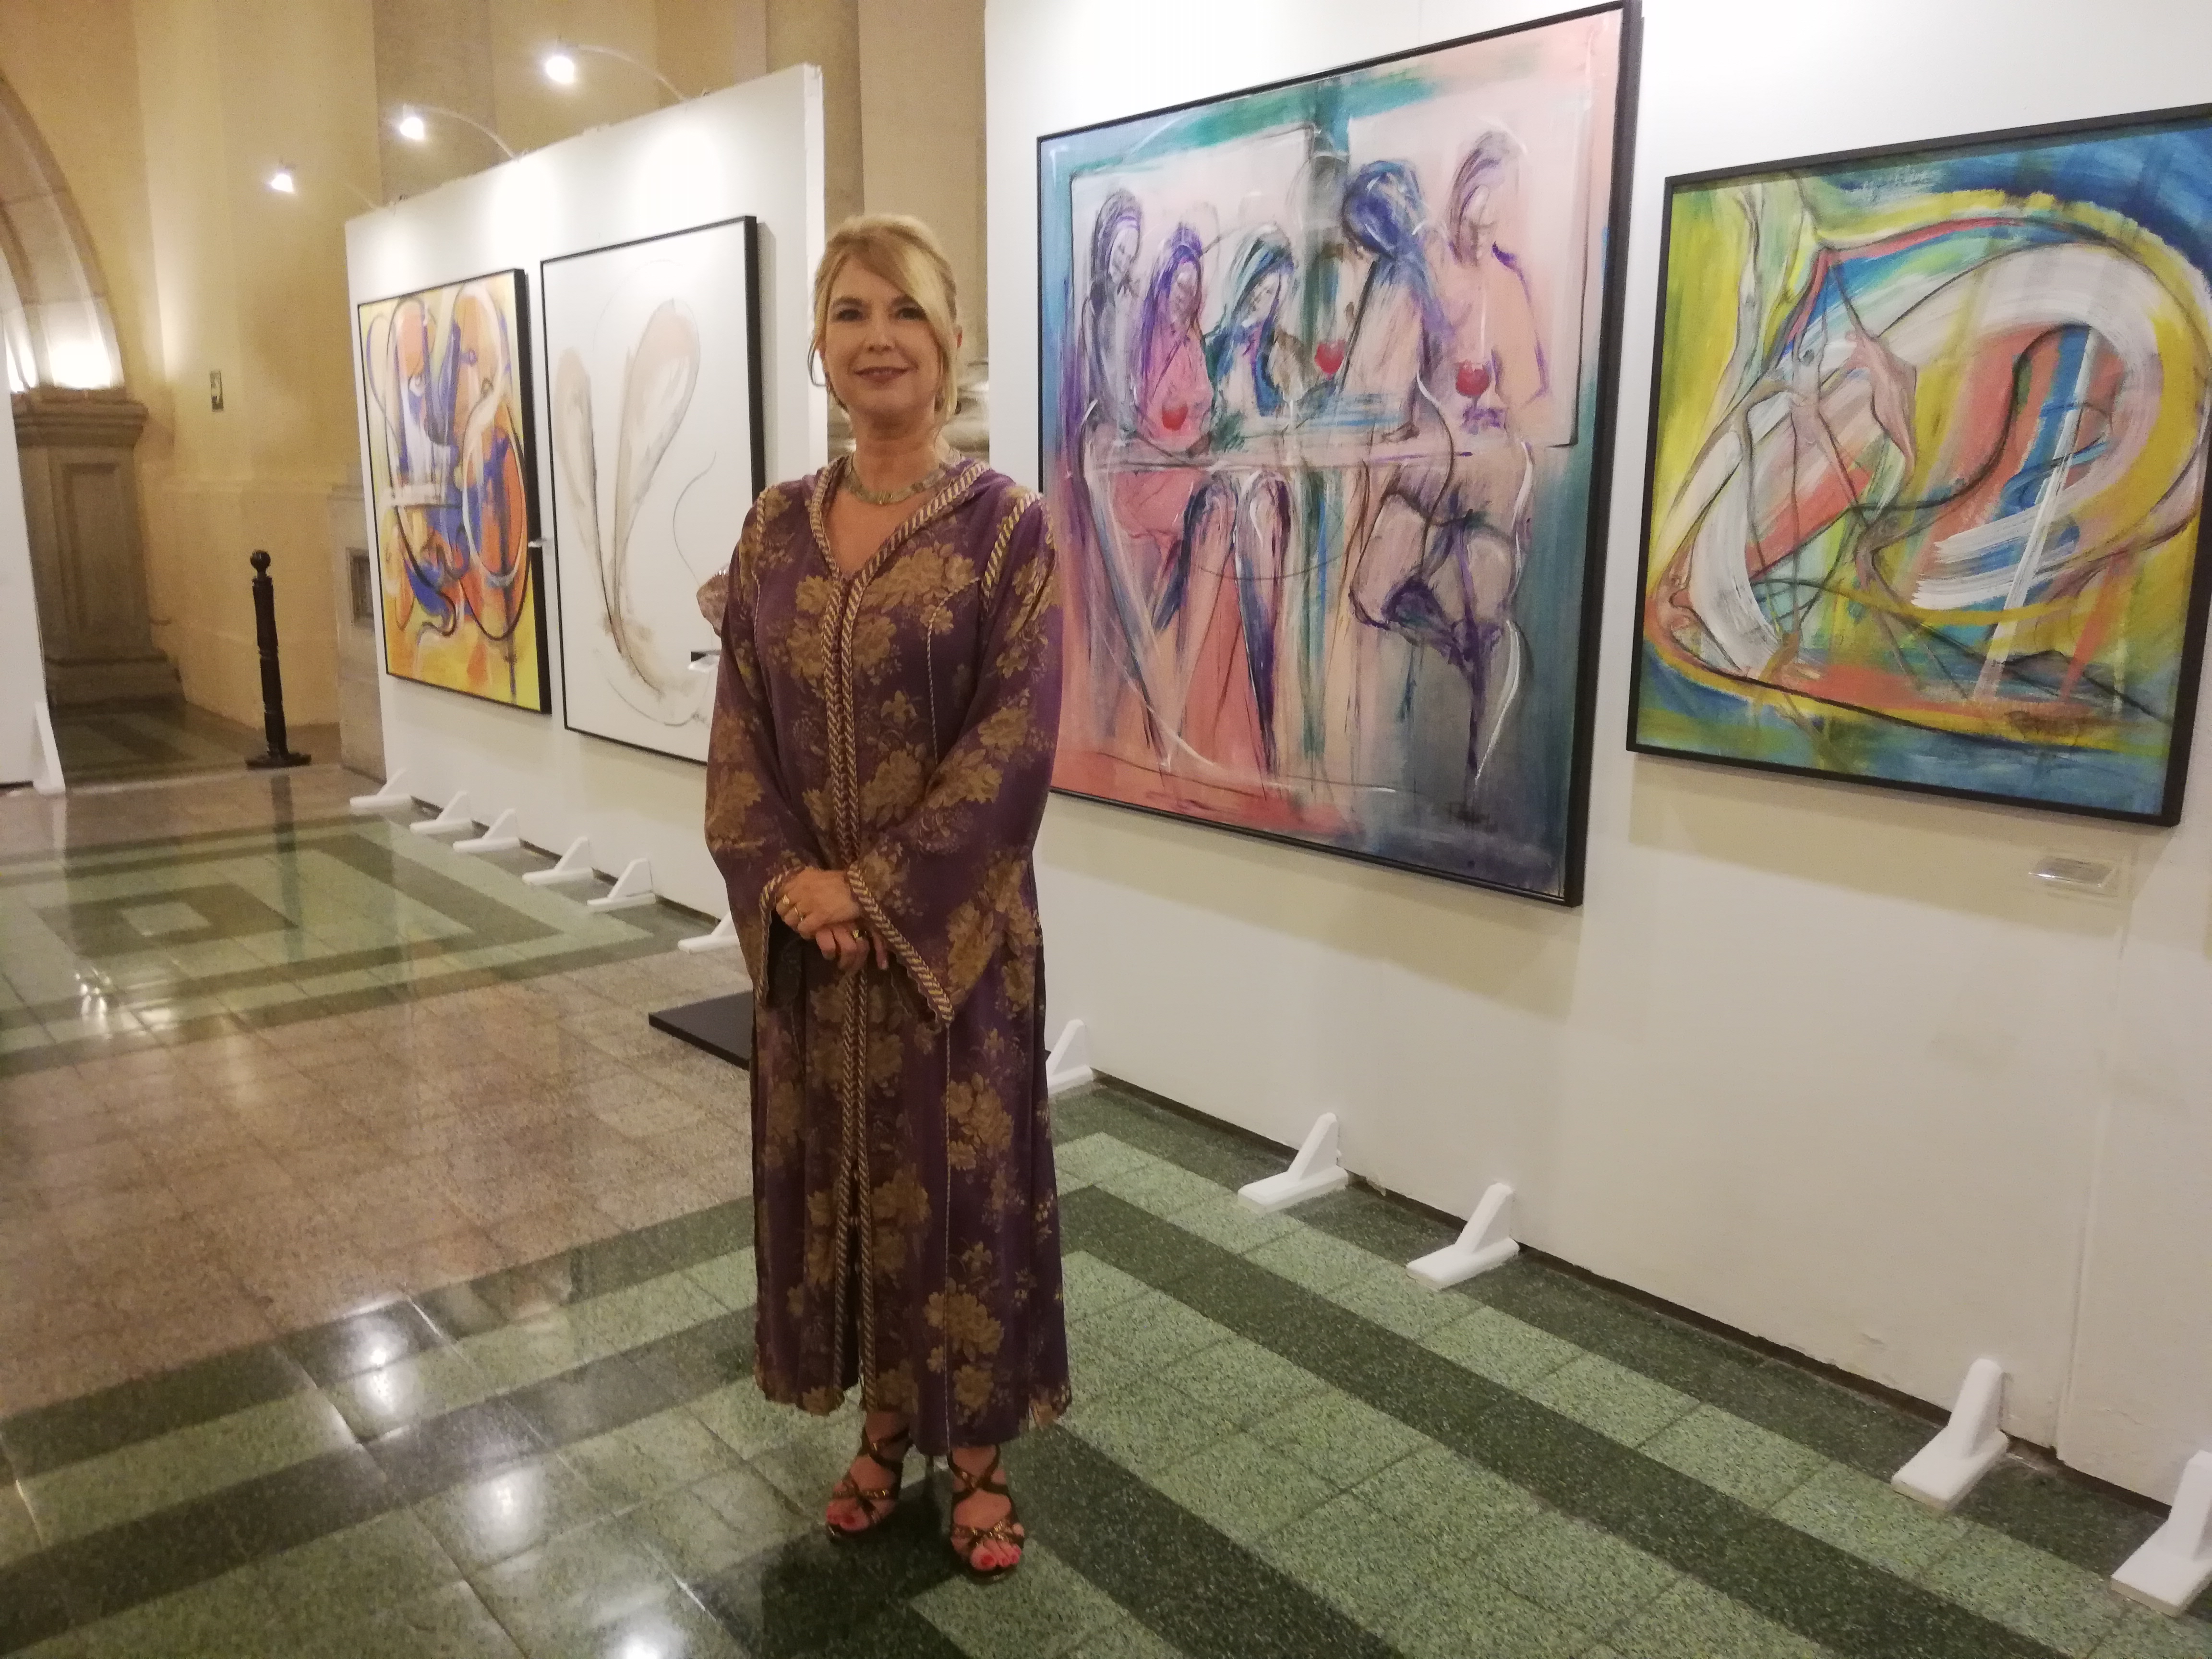 Beverley Rowley ha destacado en exposiciones plásticas individuales y colectivas en Guatemala, Estados Unidos, Canadá, Italia y República Dominicana. (Foto Prensa Libre: Ingrid Reyes)